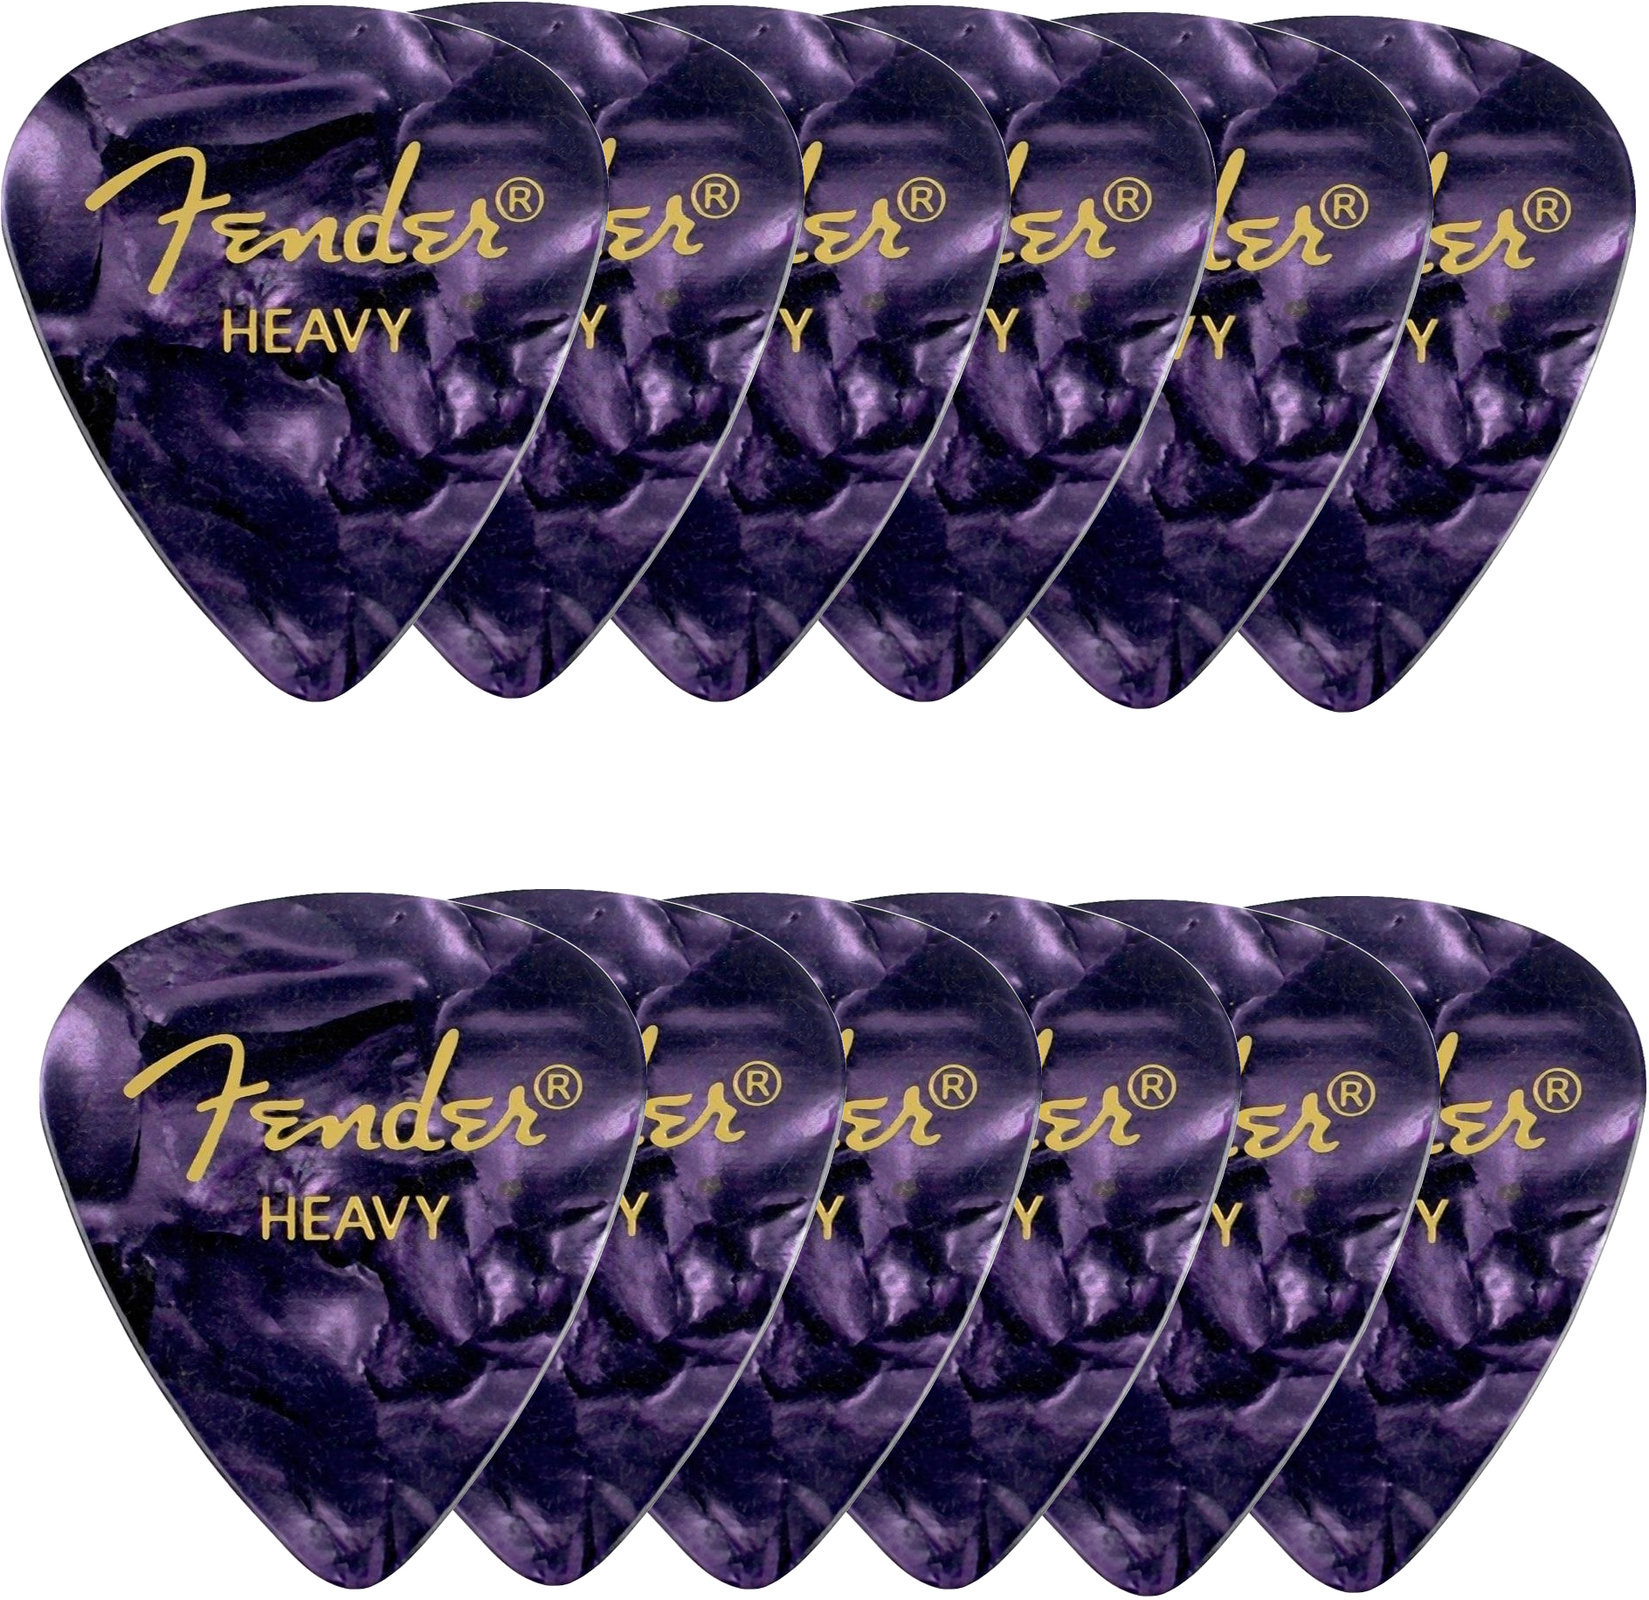 Pengető Fender Shape Premium Picks Purple 12 Pack